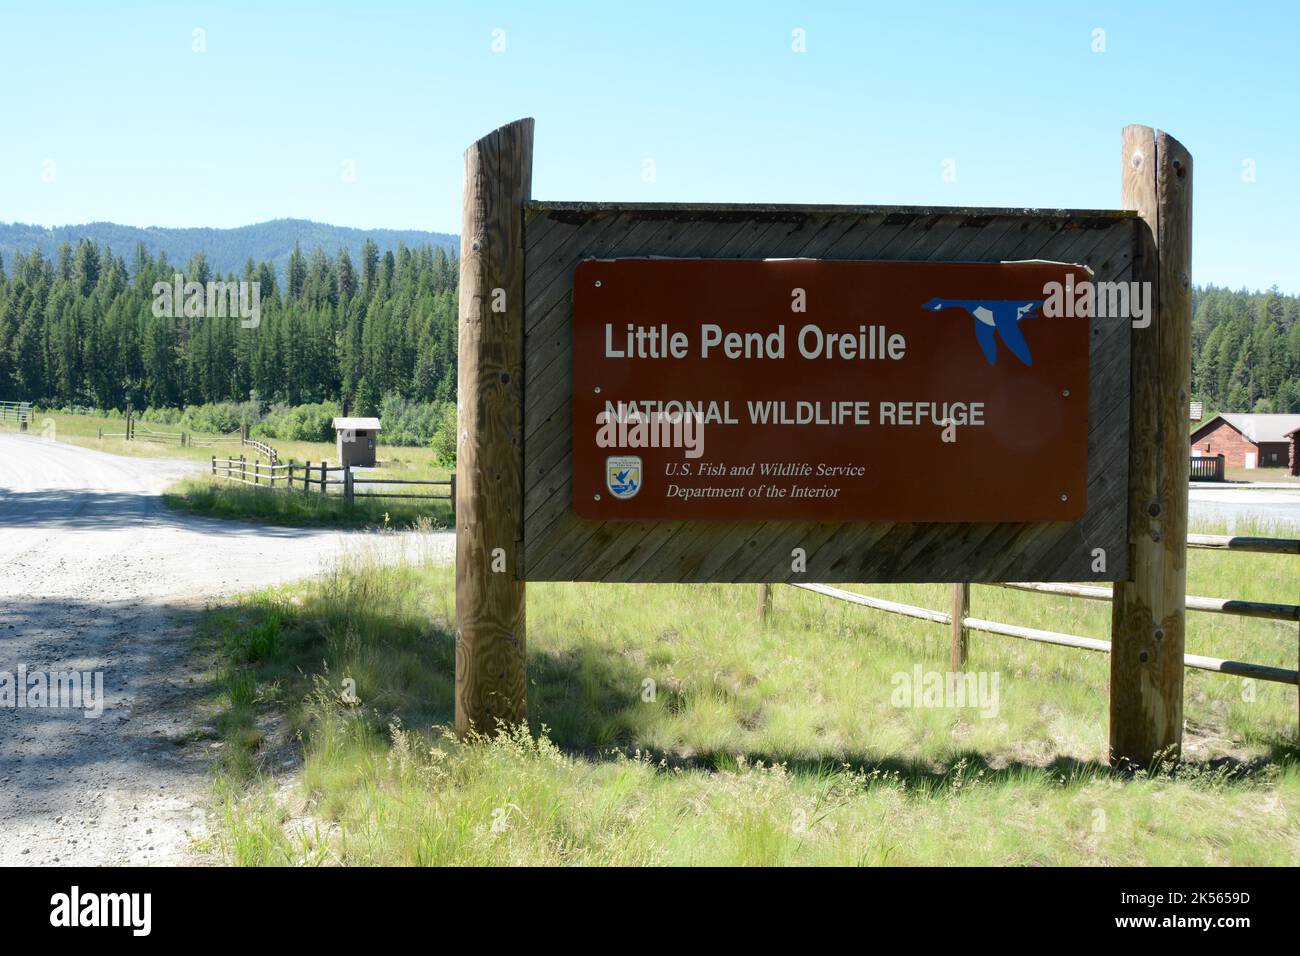 L'entrée de la route de la réserve naturelle nationale de Little Pend oreille, près de la ville de Colville, dans le nord-est de l'État de Washington, États-Unis. Banque D'Images